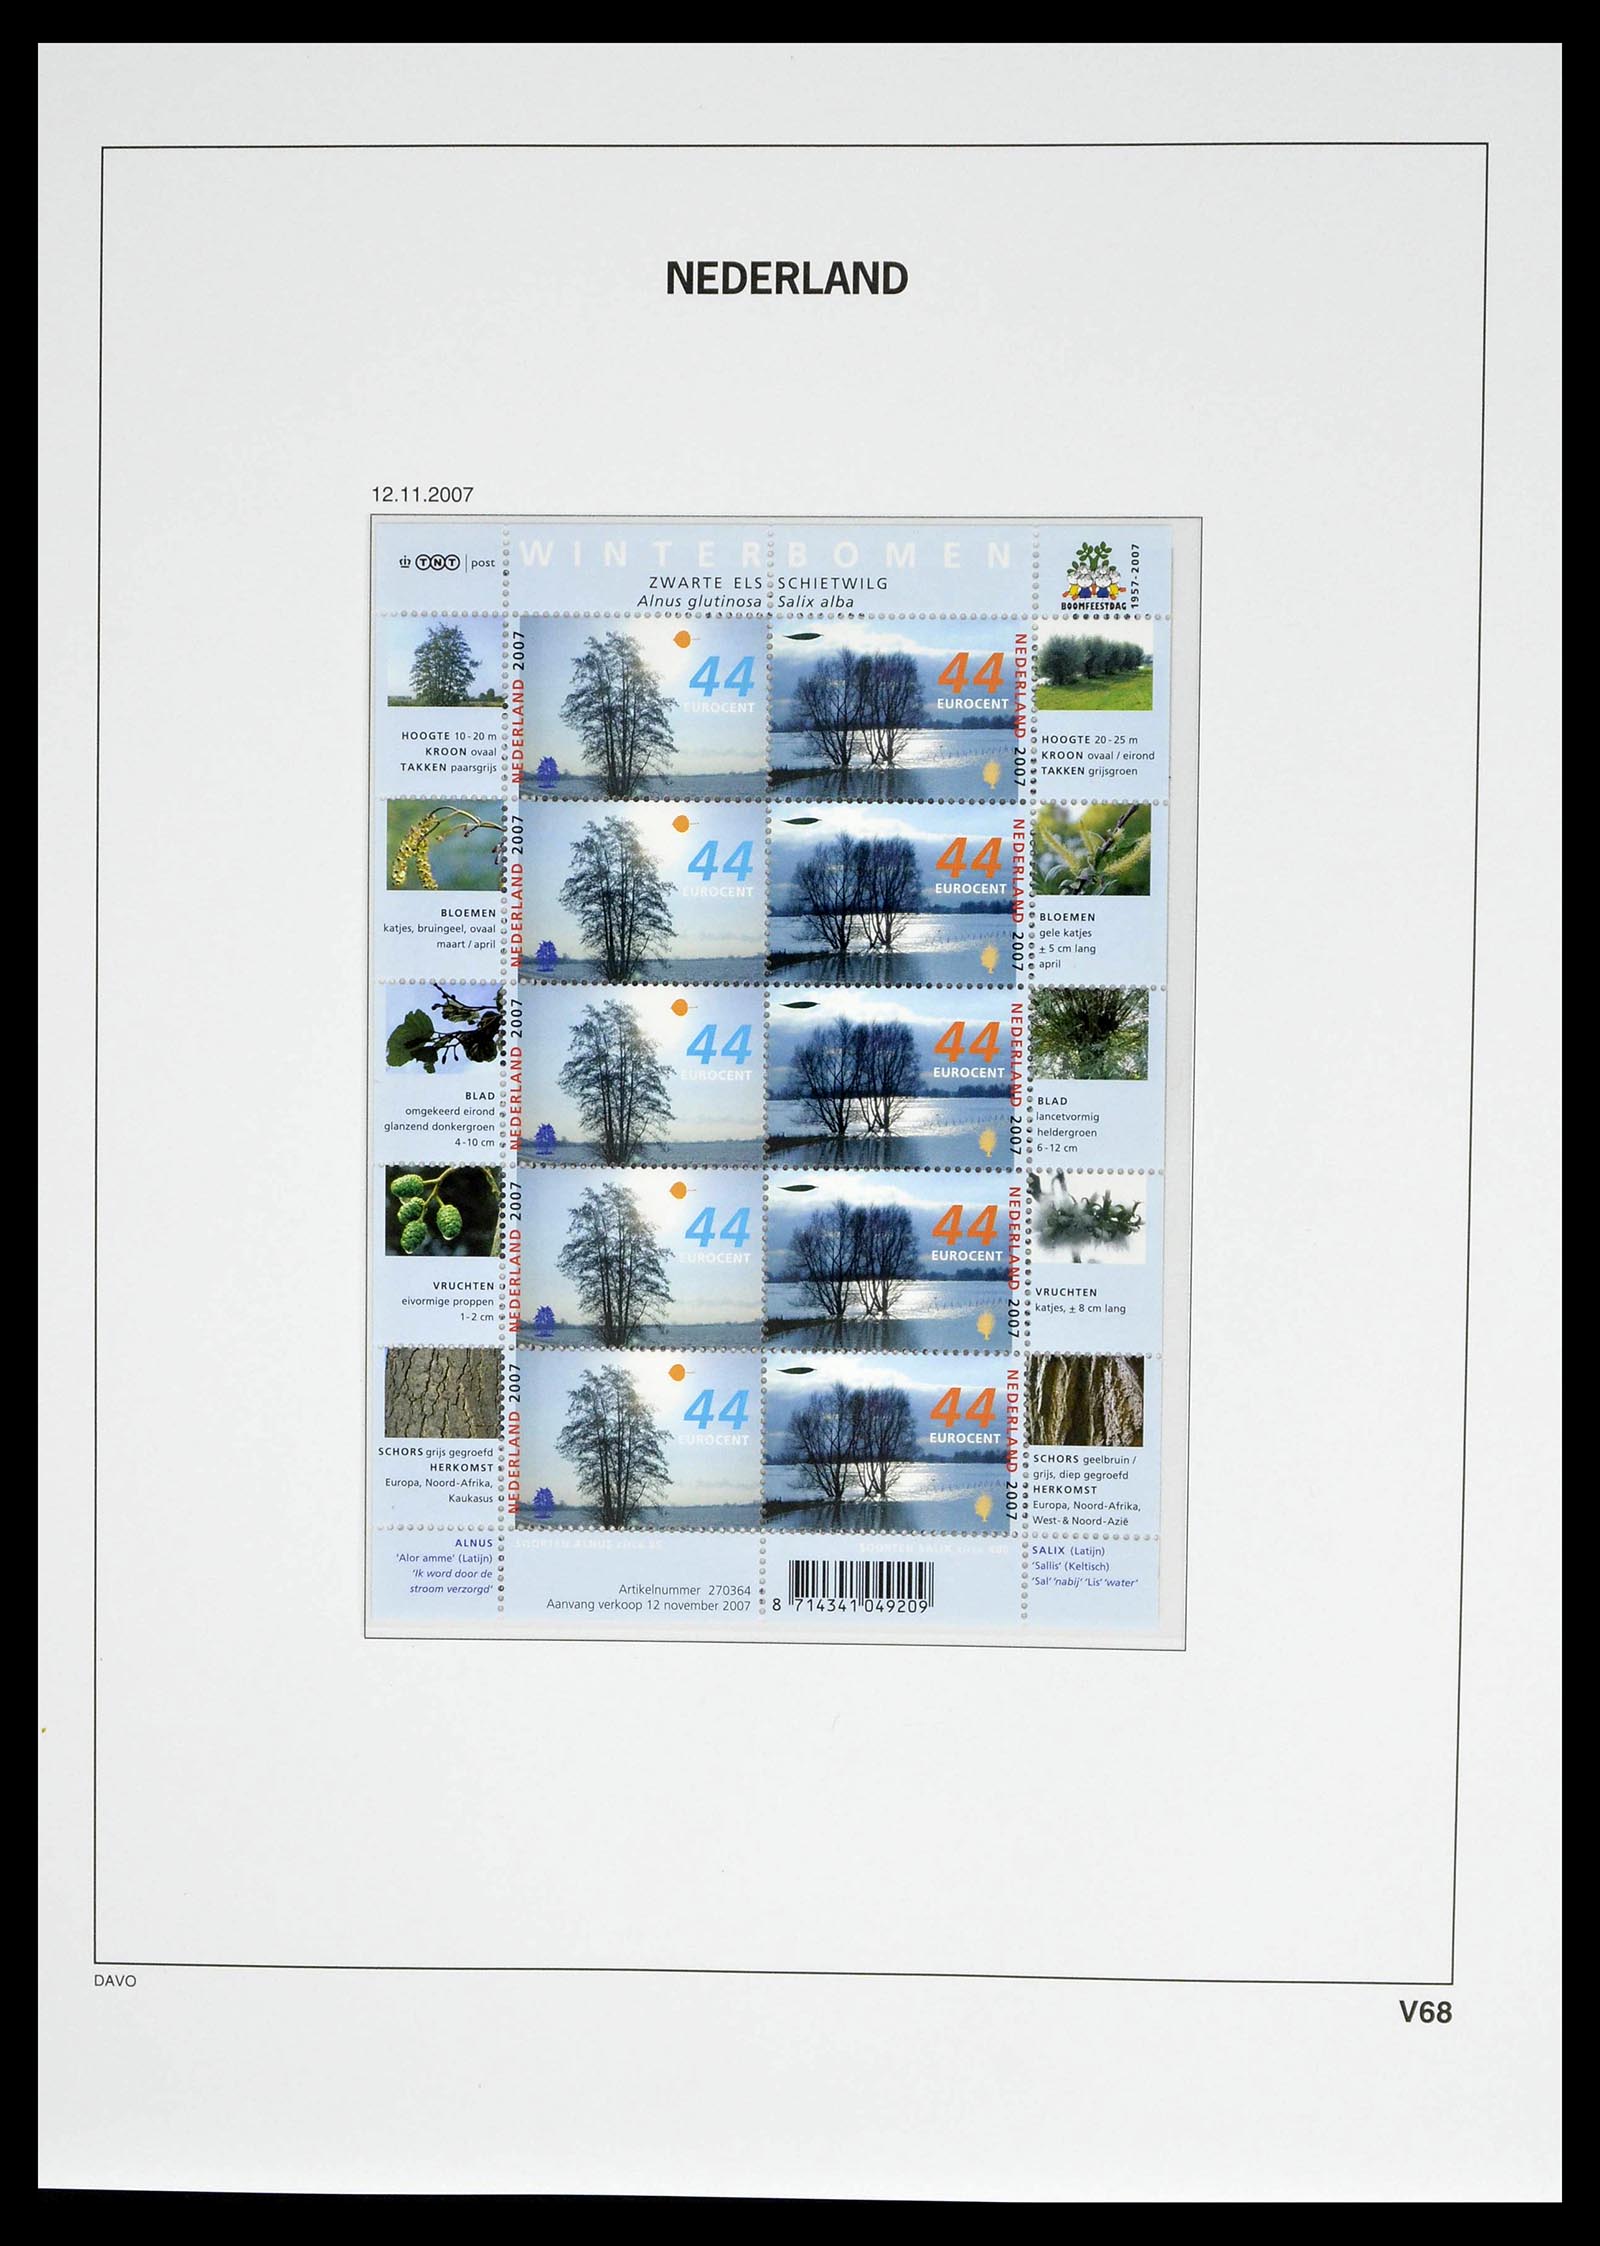 39134 0082 - Stamp collection 39134 Netherlands sheetlets 1992-2019!